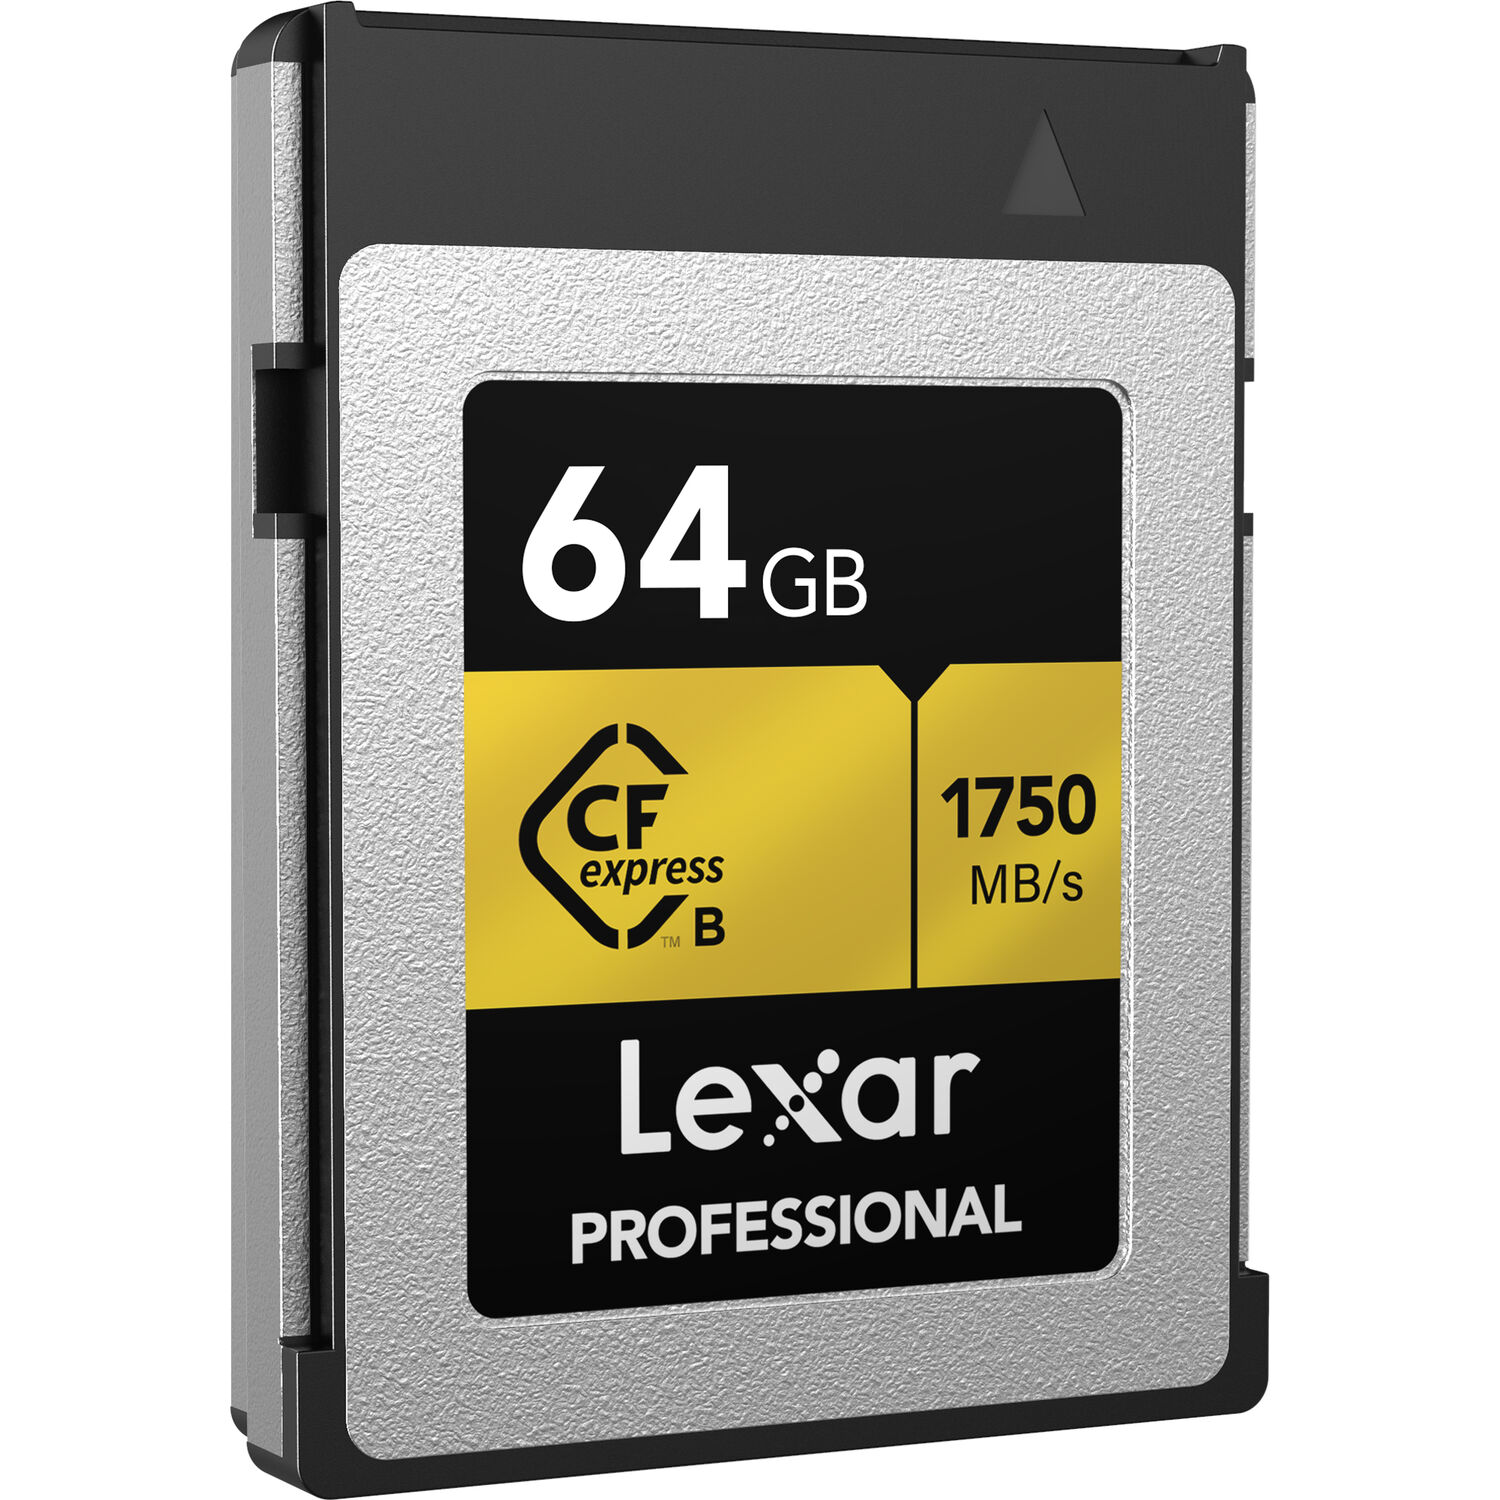 Lexar CFexpress 64GB Type B 1750 MB/s